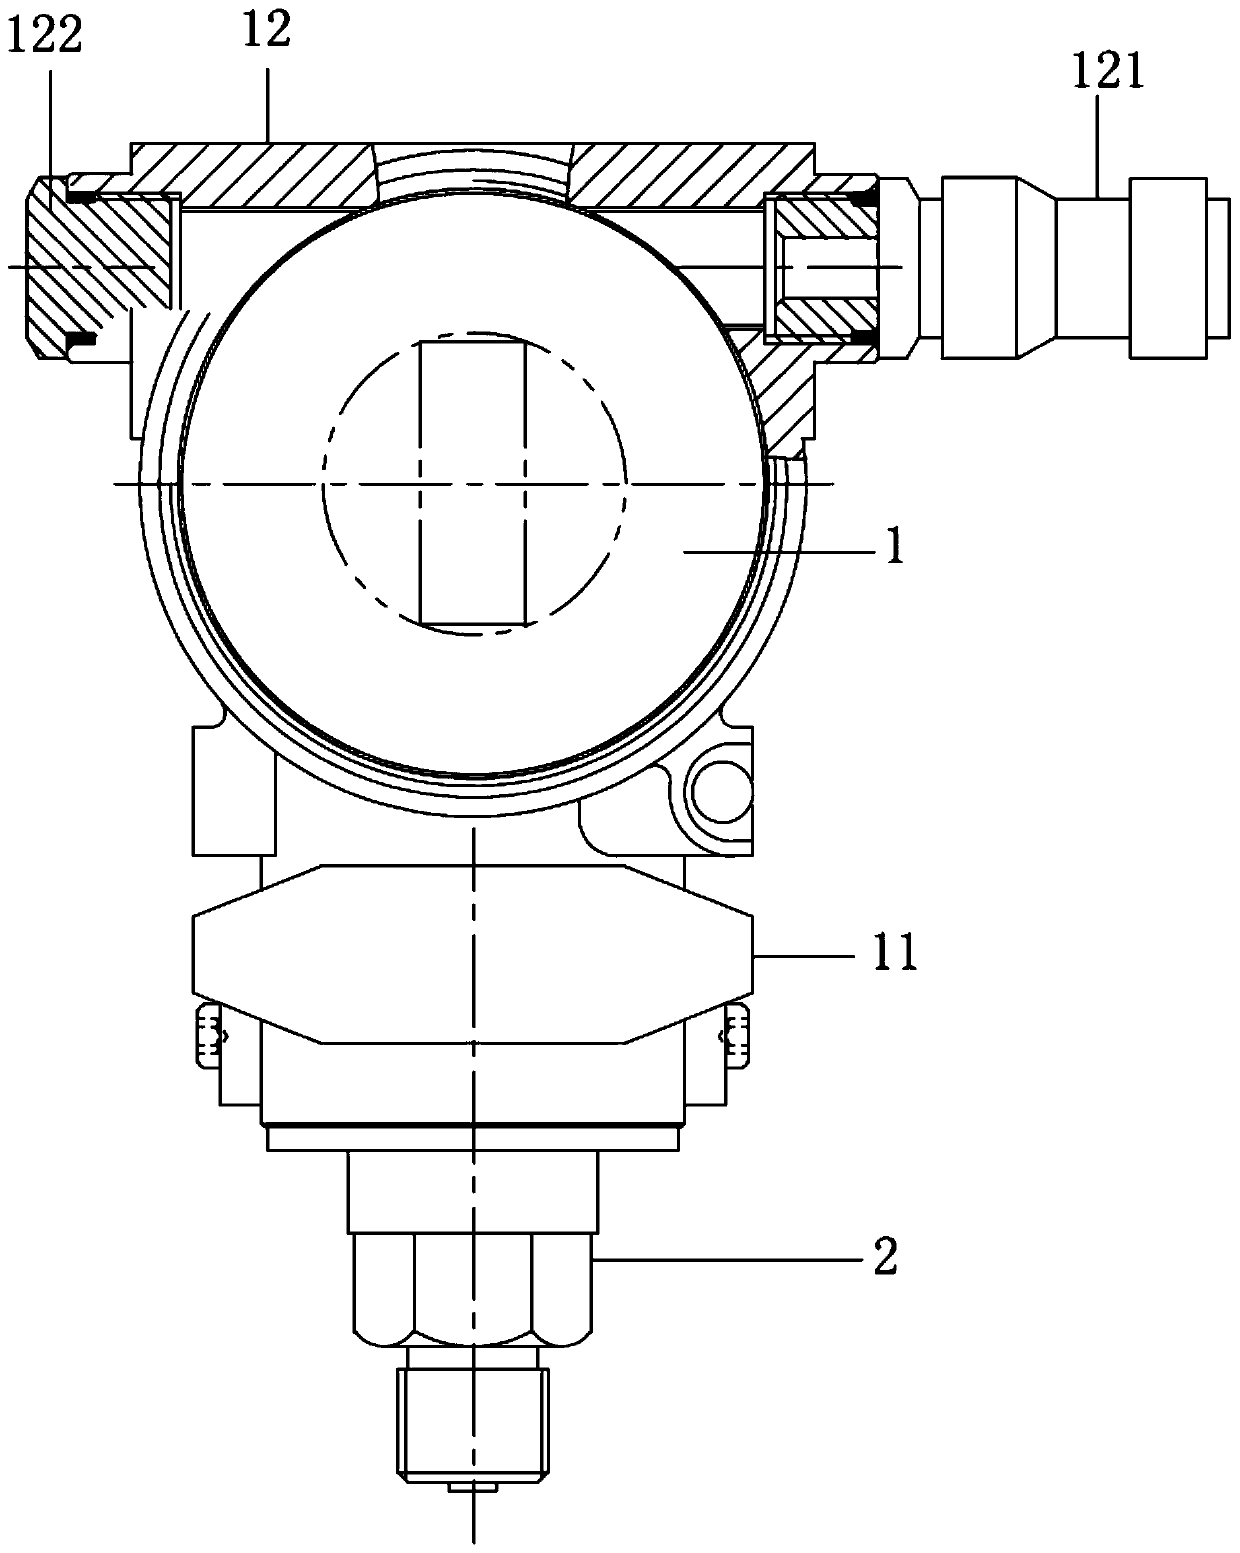 Pressure transmitter with adjustable pressure sensor